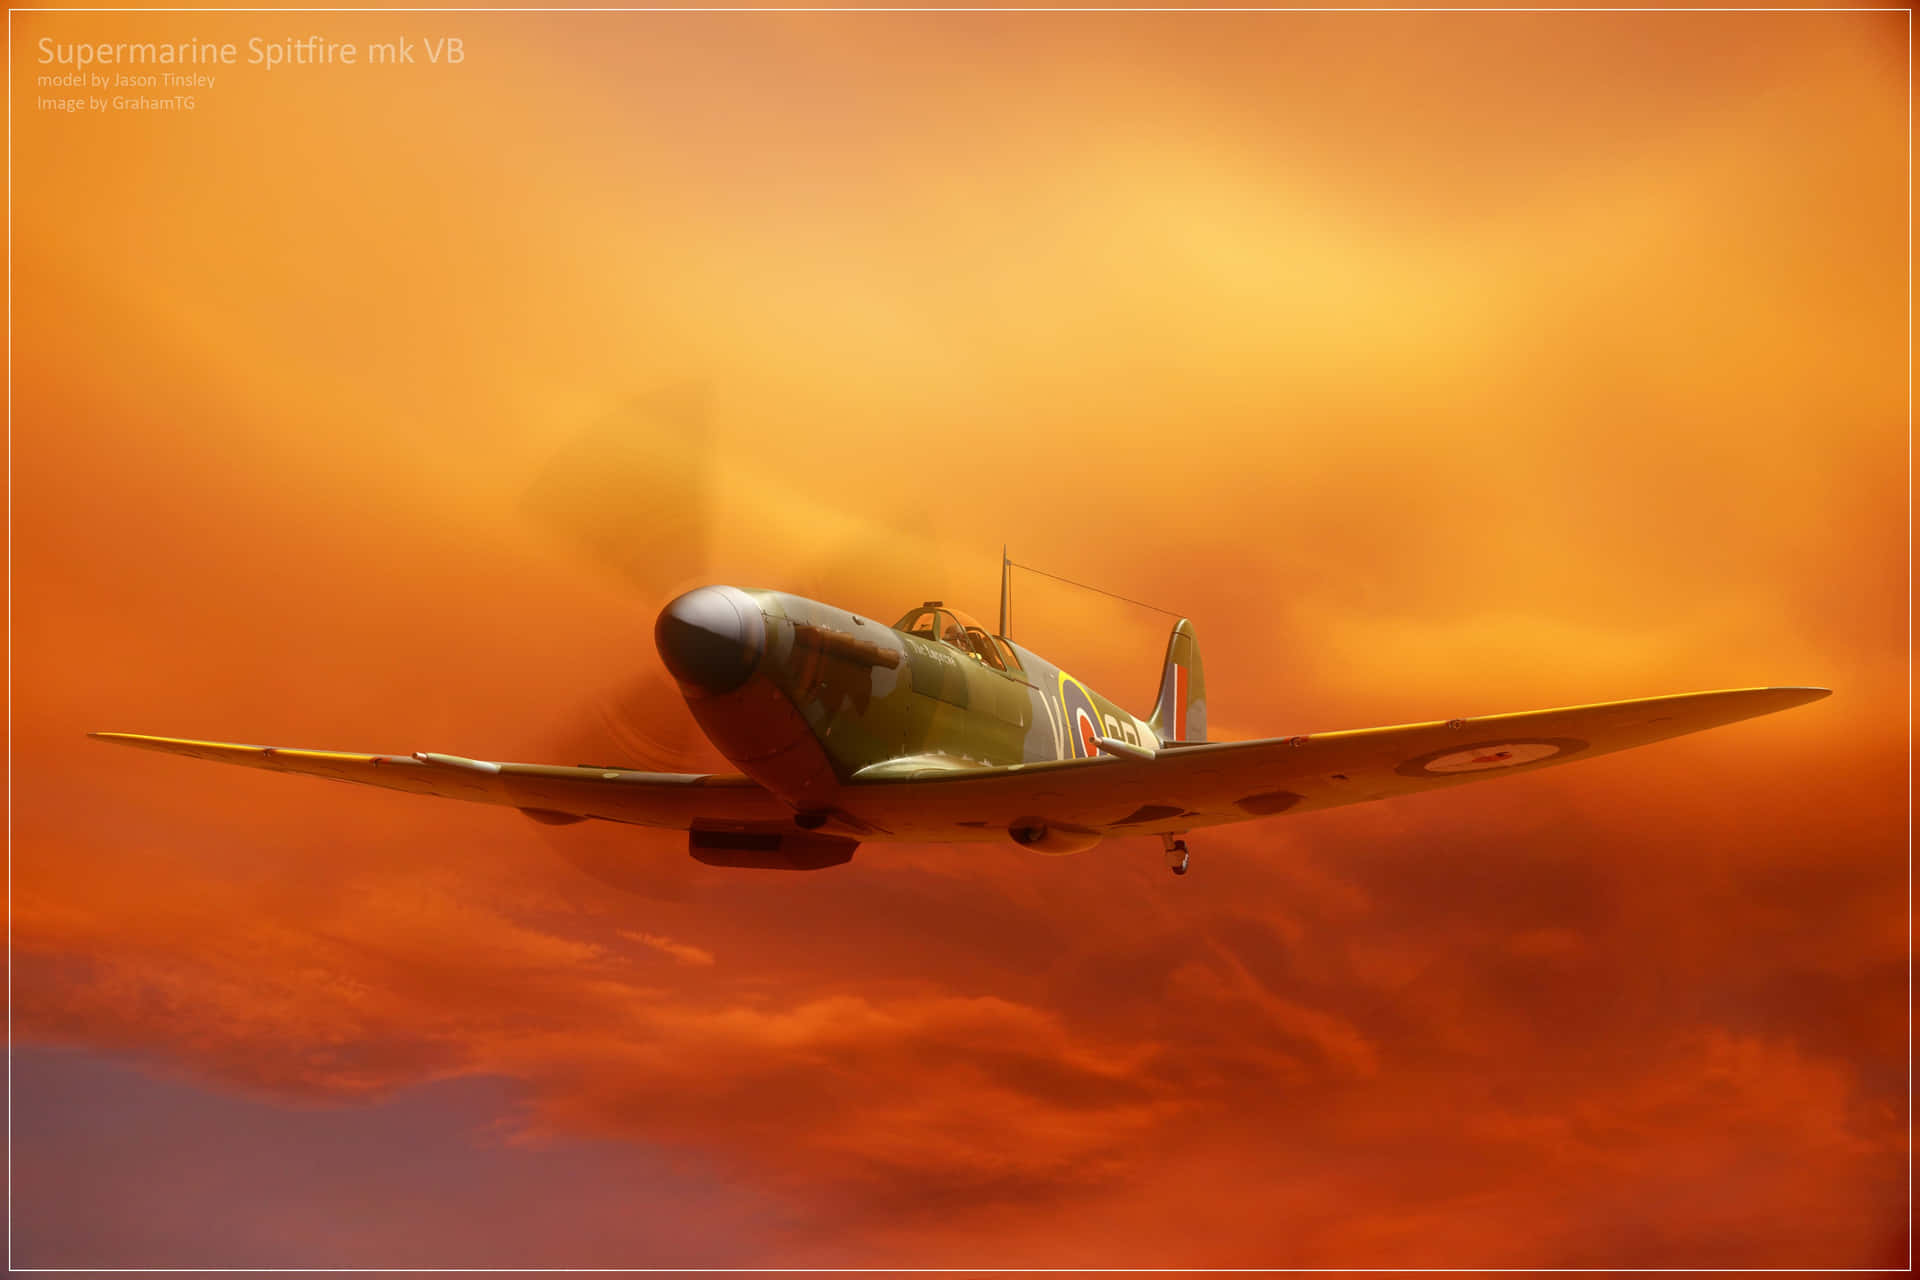 Ettspitfire-flygplan Som Svävar Genom Luften Och Representerar Triumf, Mod Och Styrka. Wallpaper